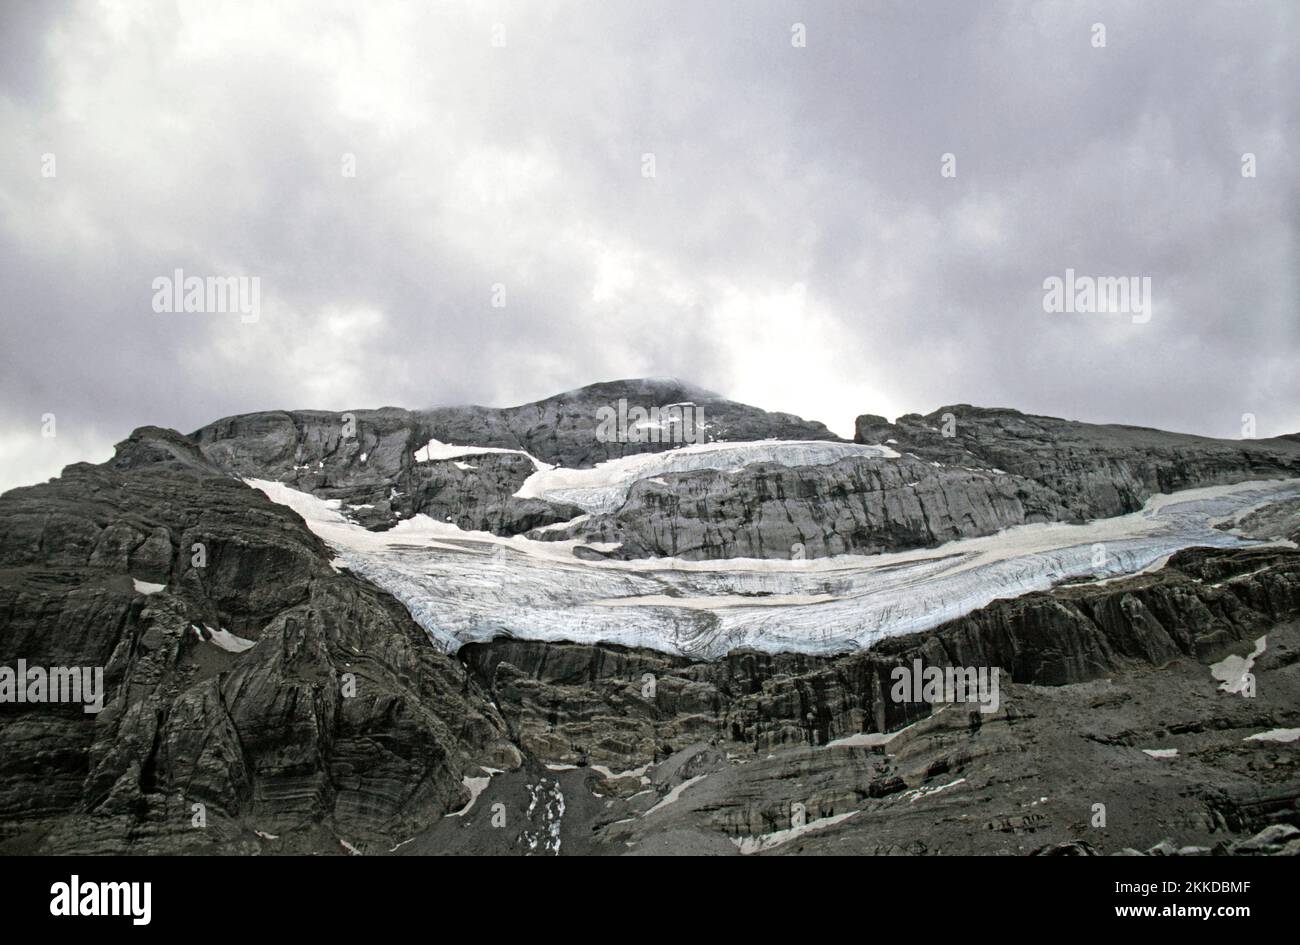 glaciar del monte perdido,parque nacional de ordesa,pirineo,cambio climático,calentamiento global, Stock Photo